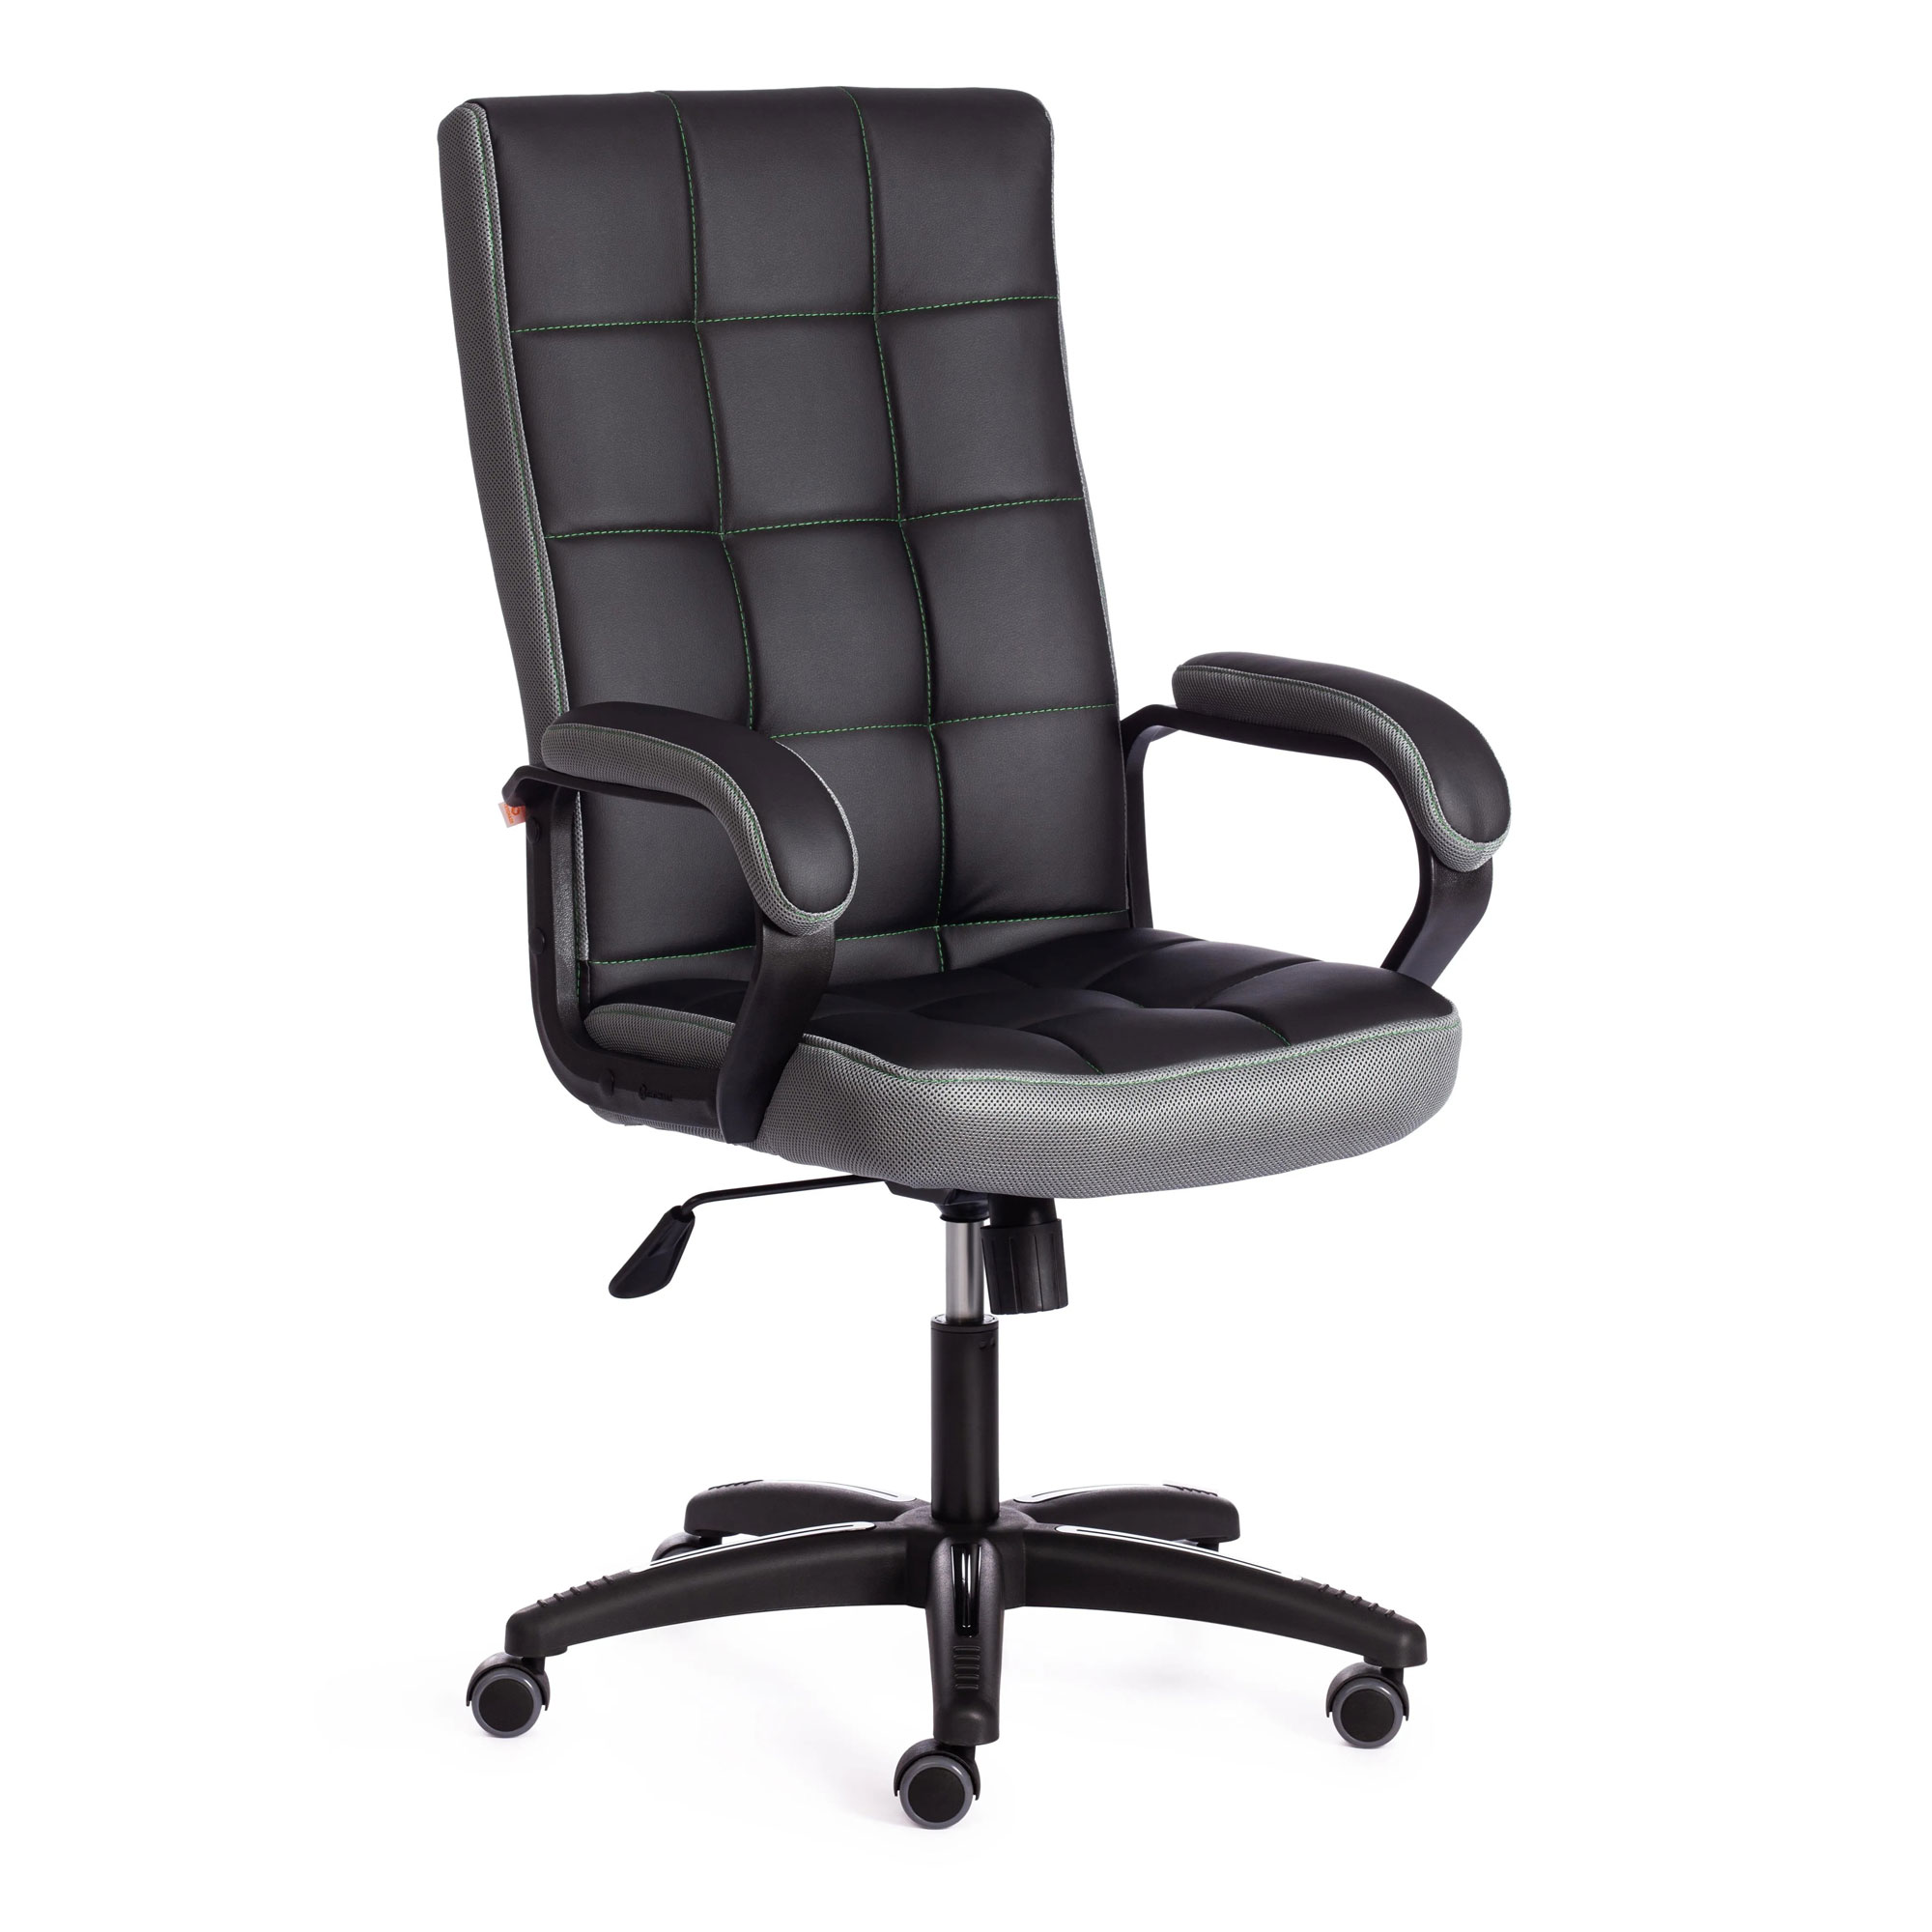 Кресло компьютерное TC искусственная кожа чёрное с серым 61х47х126 см кресло компьютерное tc driver искусственная кожа чёрное с оранжевым 55х49х126 см